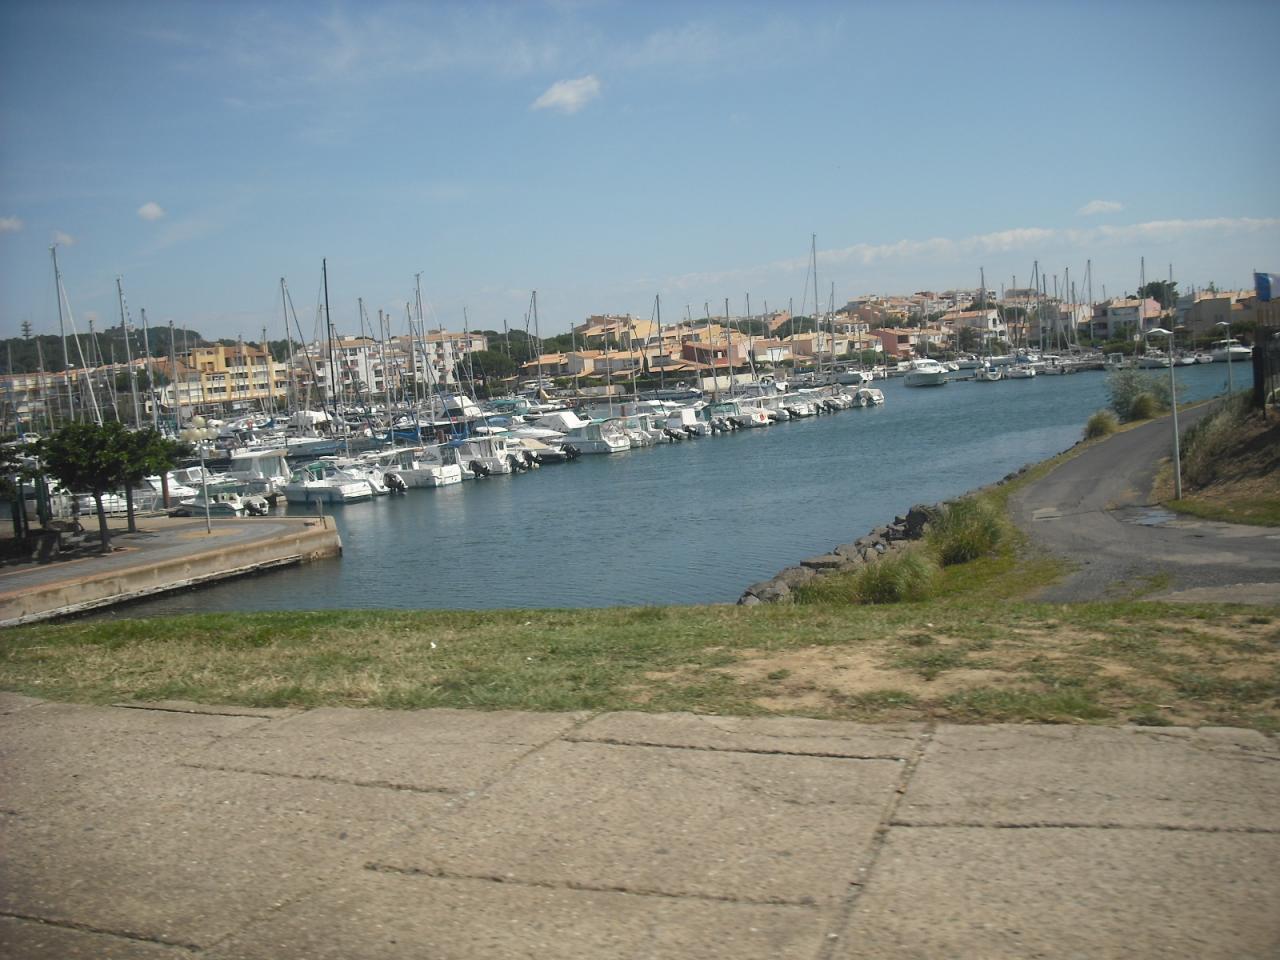 2- Port Cap d'Agde